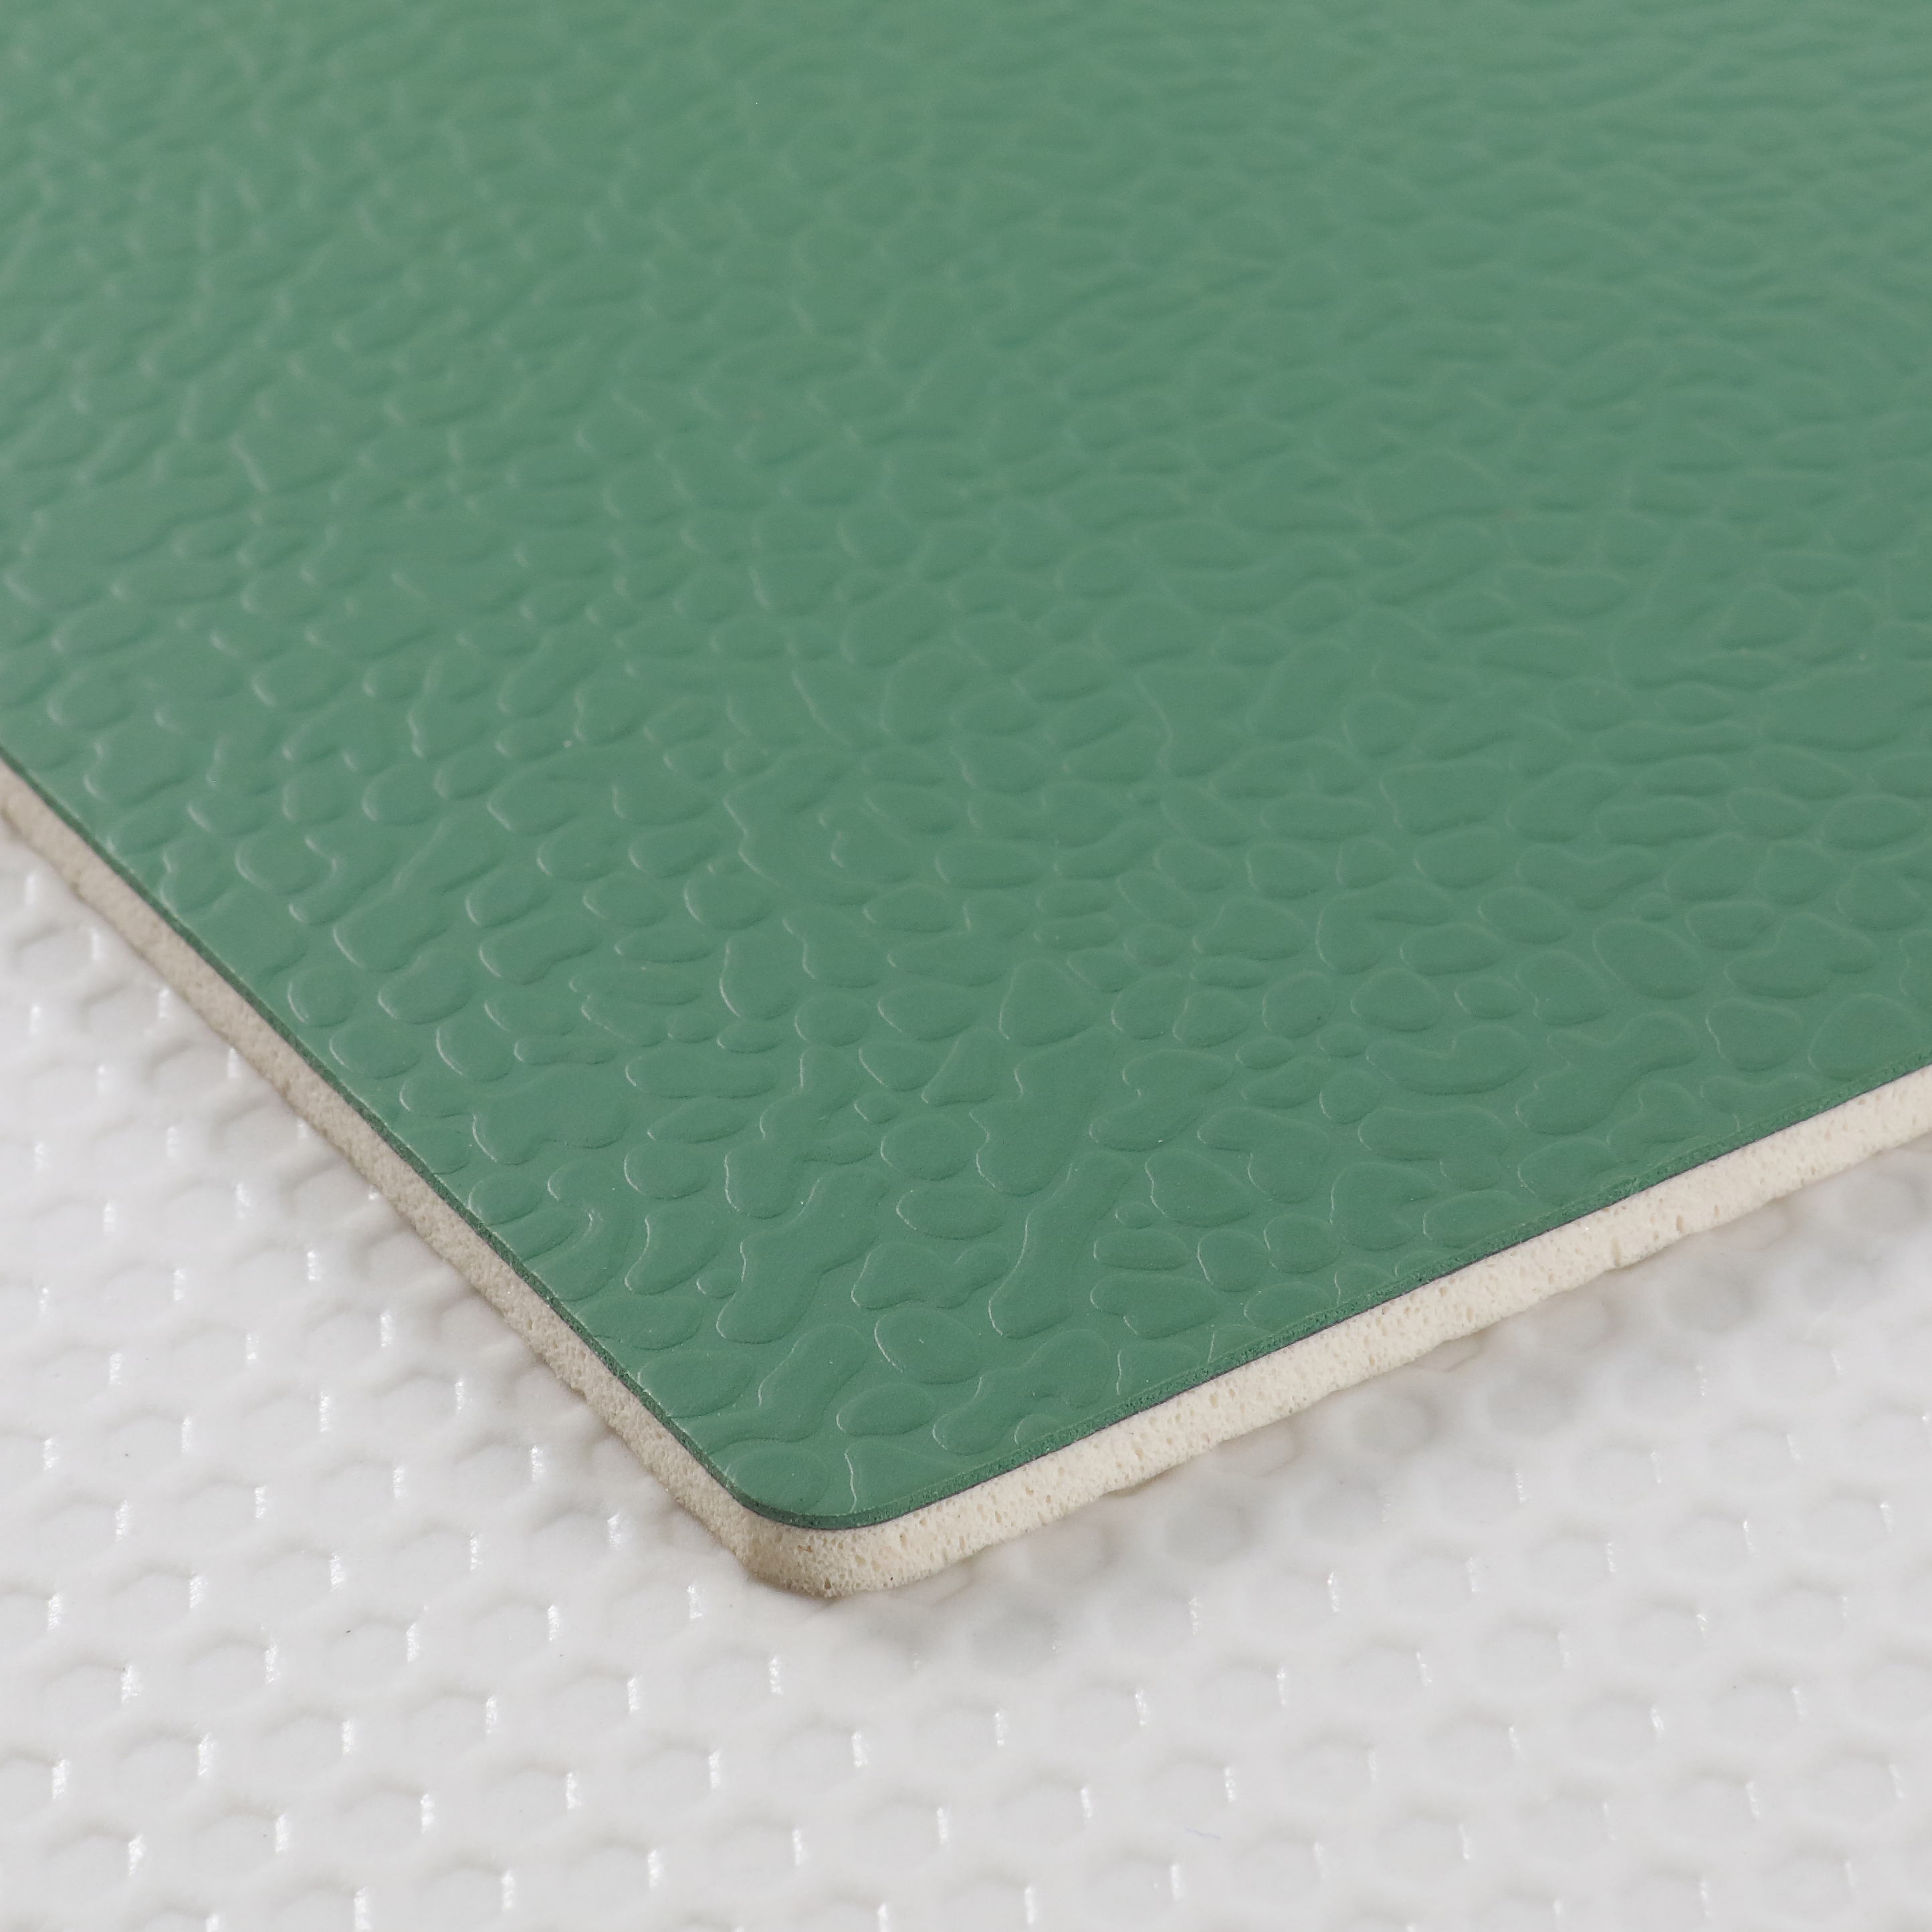 Textured PVC Flooring For Tennis Court Sheet